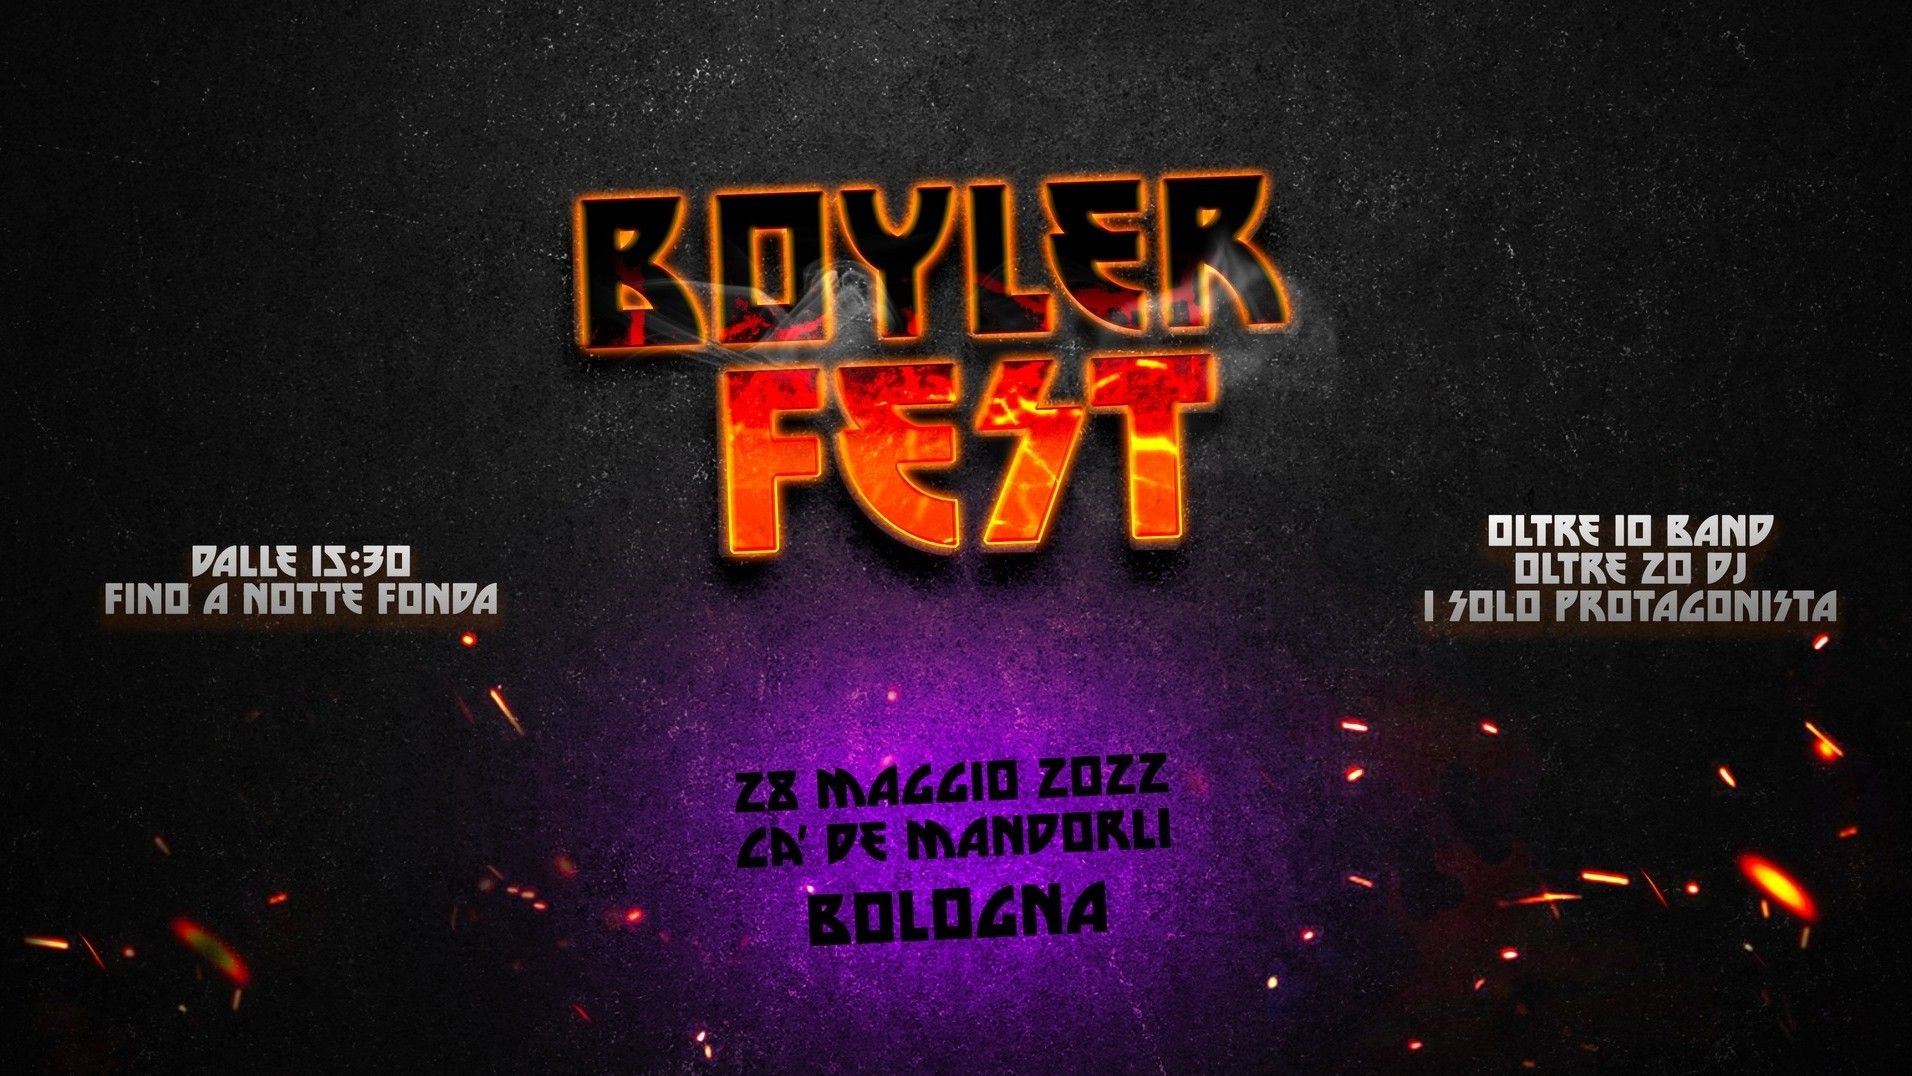 Boyler Fest